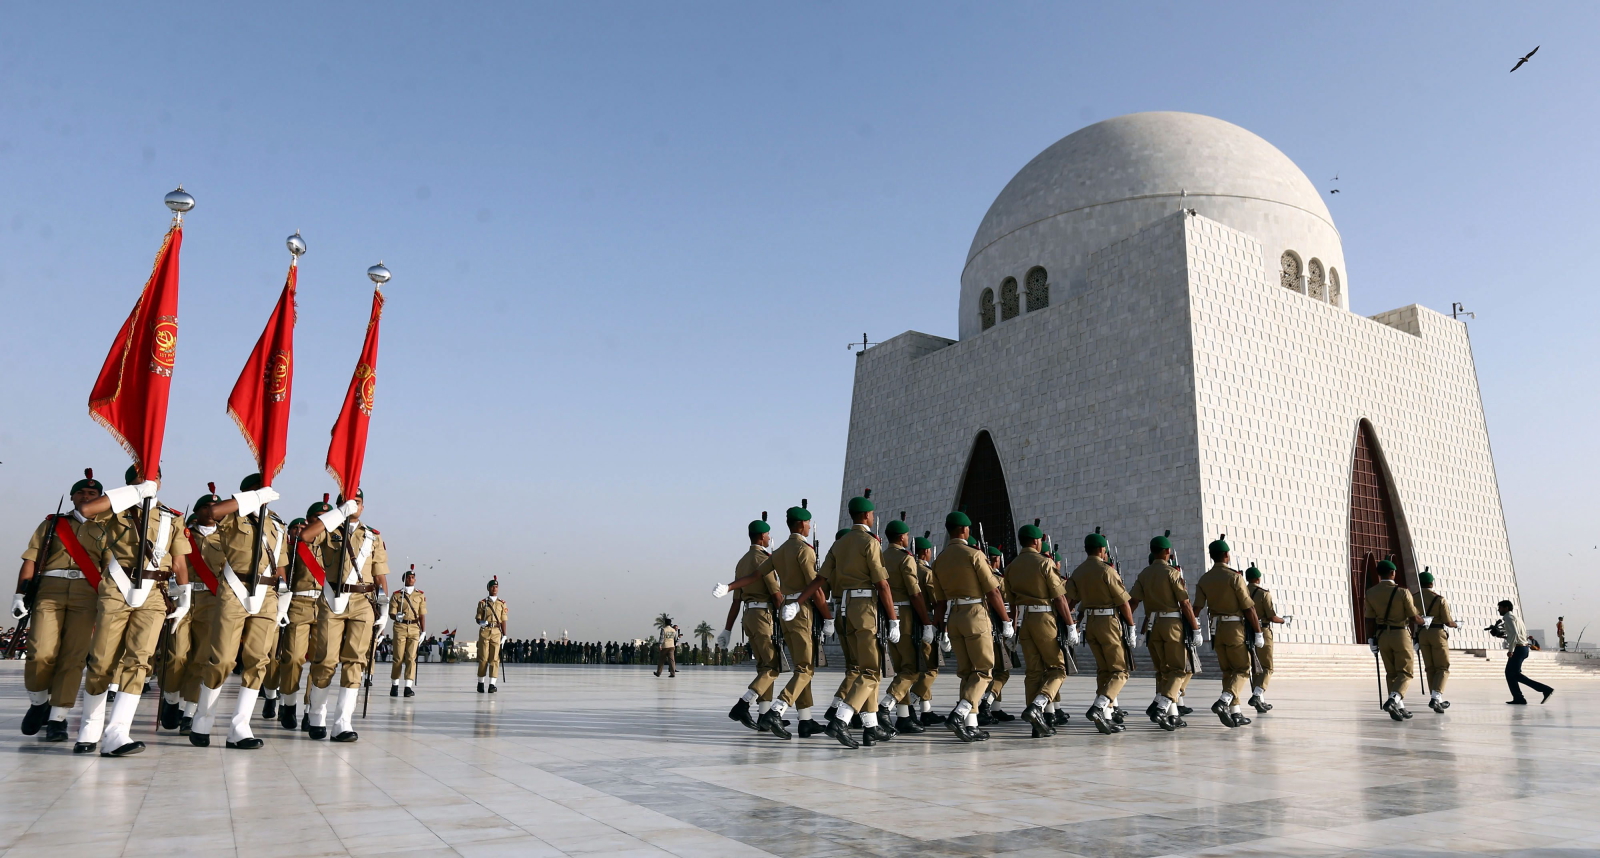 Żołnierze w czasie uroczystości ku czci ojca i założyciela narodu pakistańskiego Quaid-e-Azama Mohammada Ali Jinnaha w Karachi, Pakistan.